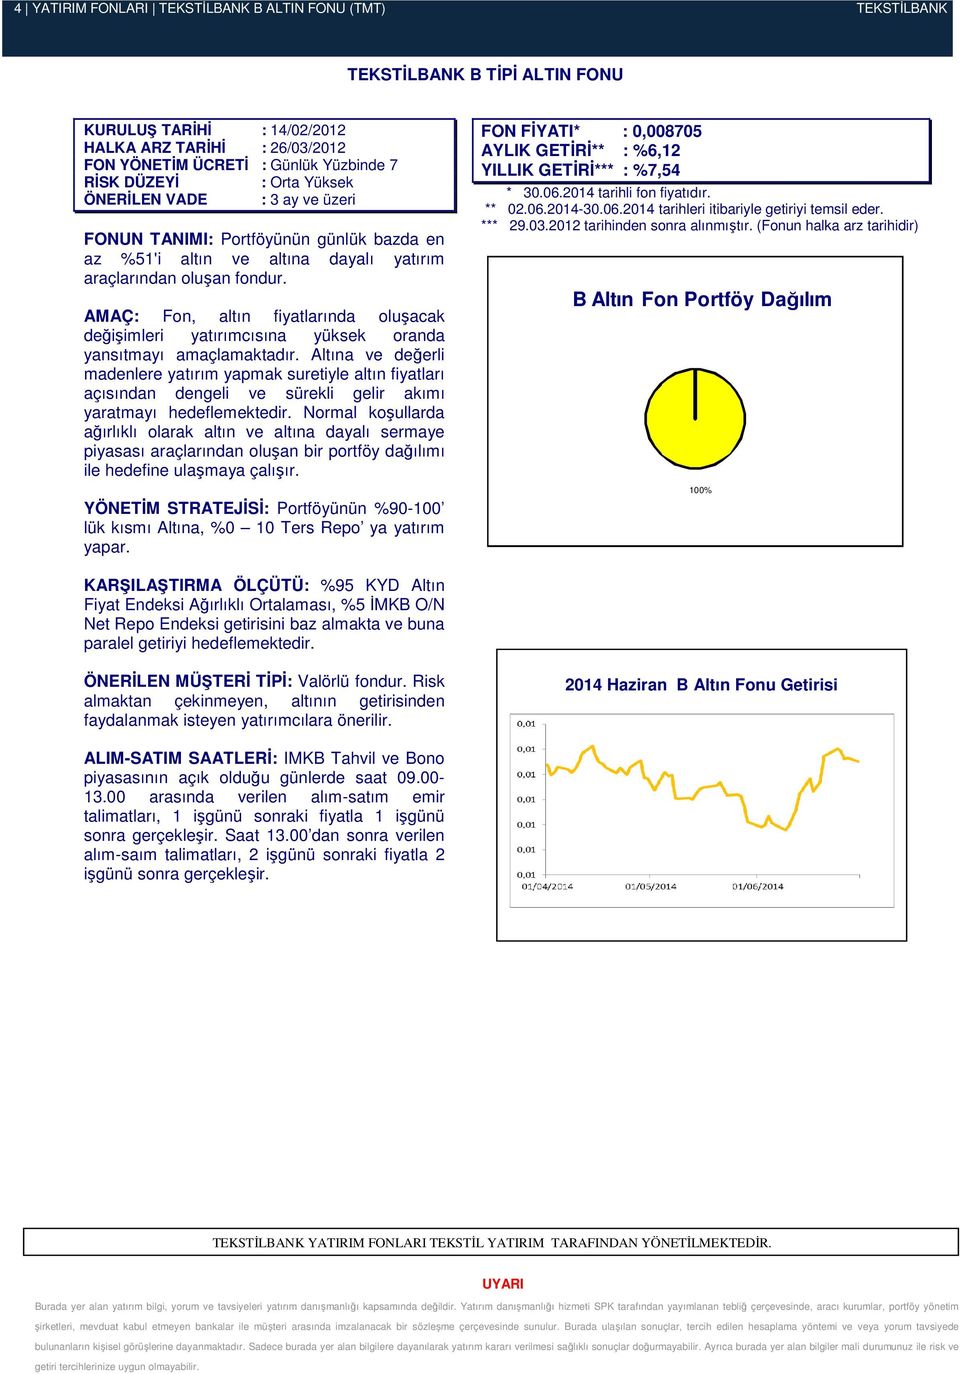 AMAÇ: Fon, altın fiyatlarında oluşacak değişimleri yatırımcısına yüksek oranda yansıtmayı amaçlamaktadır.